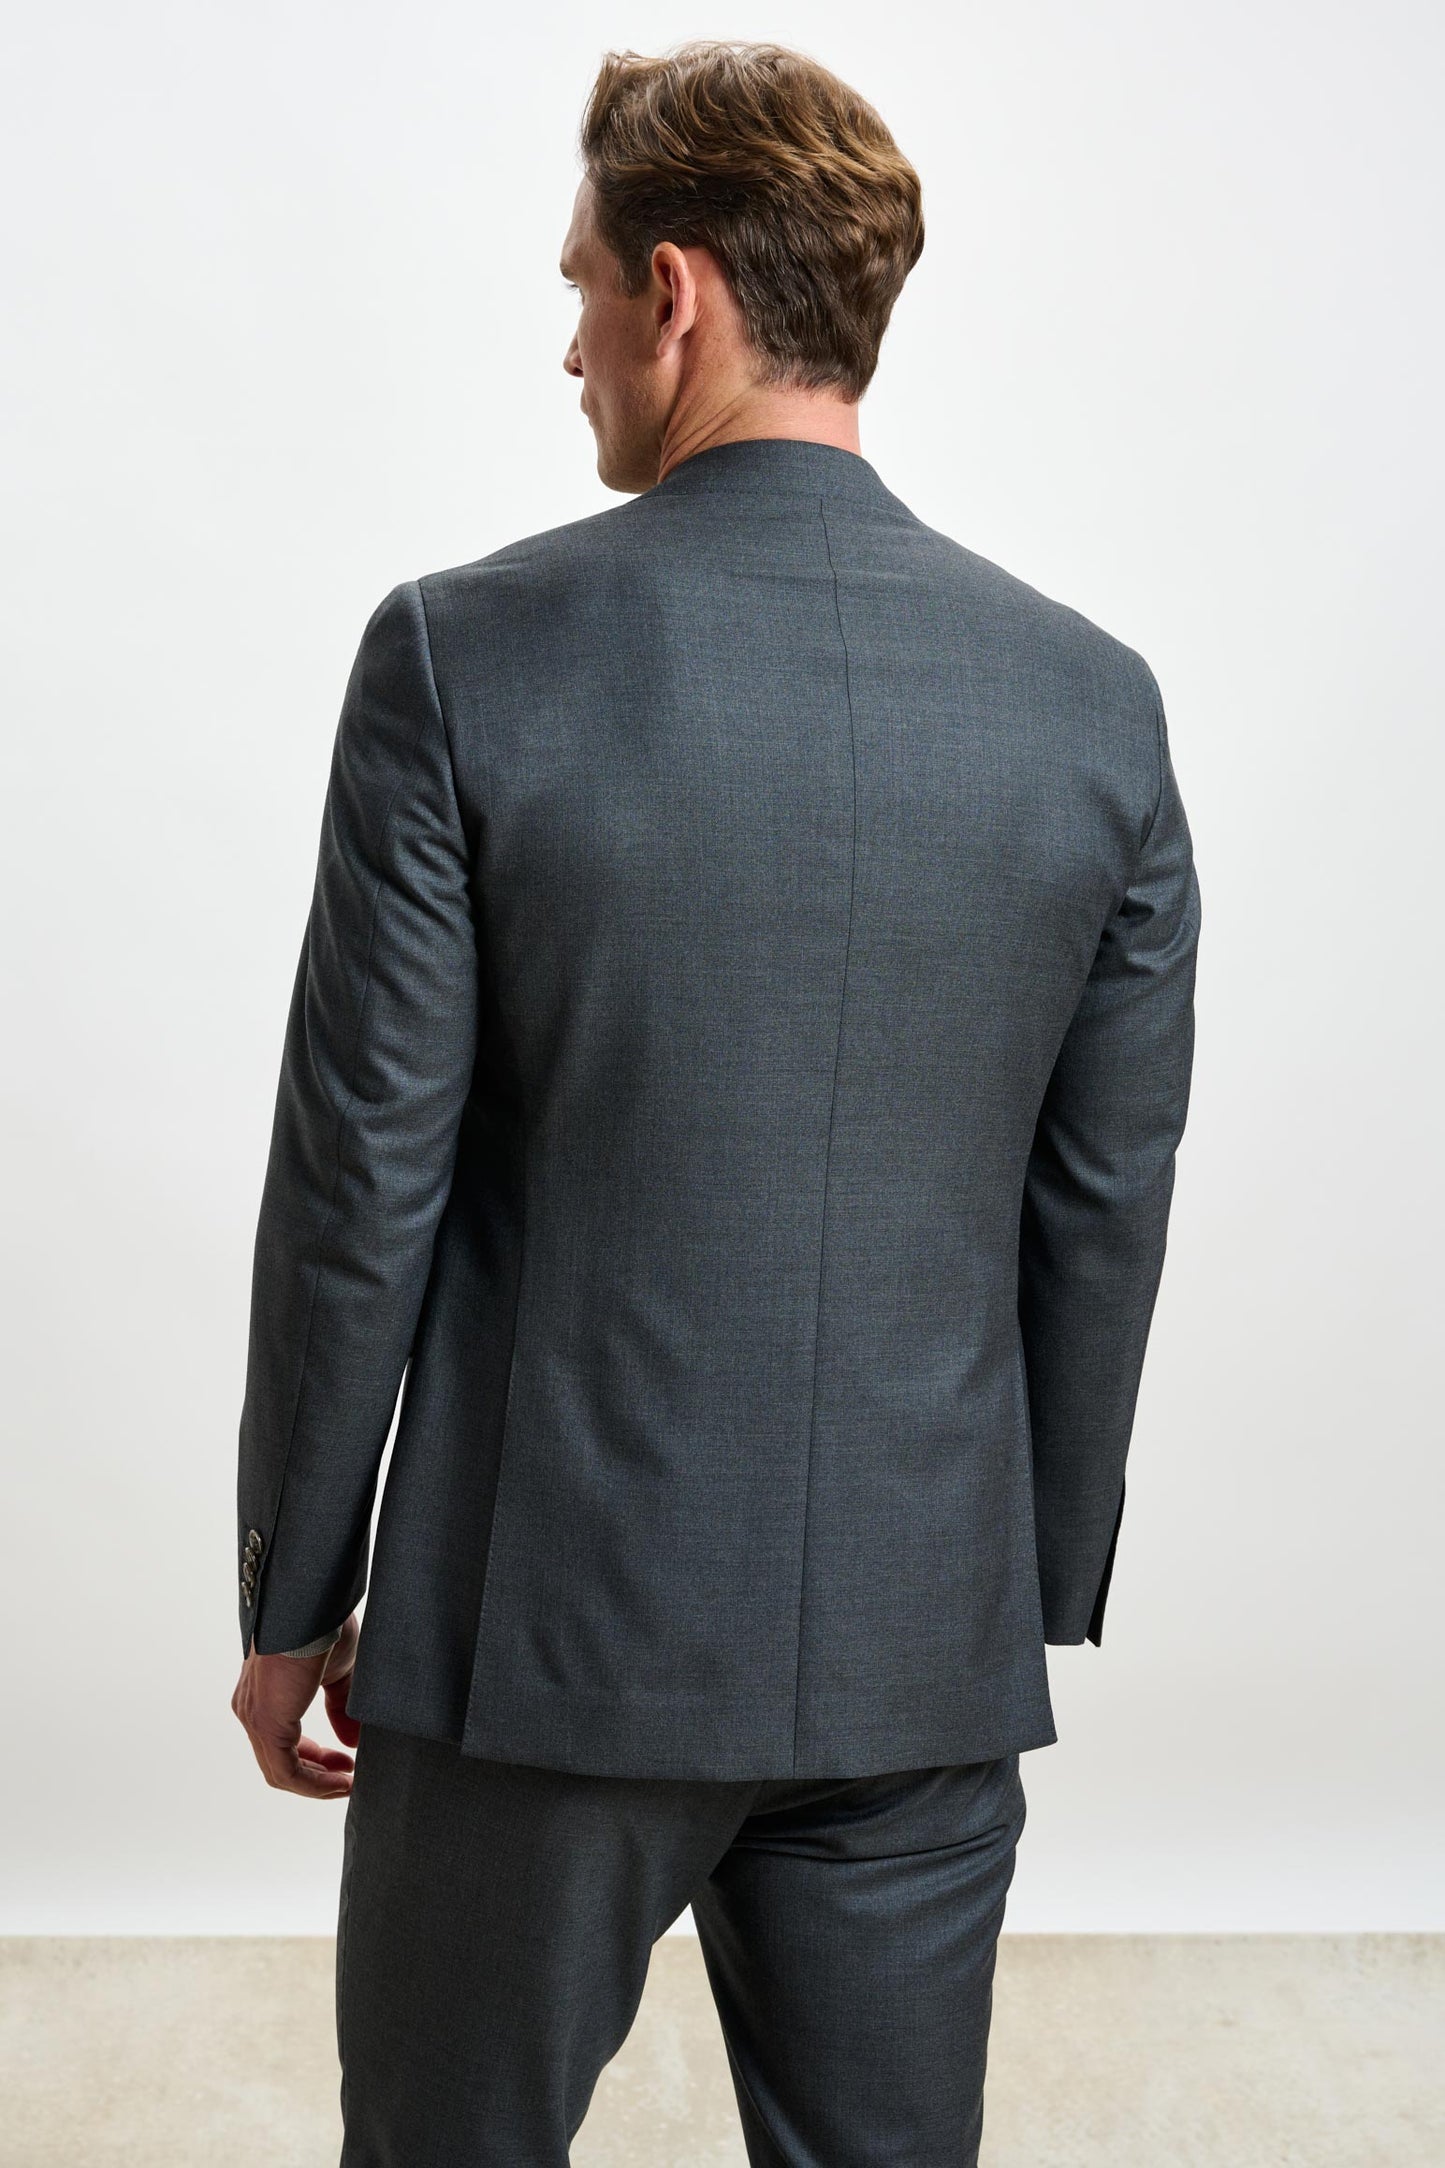 Soho Suit Eton Grey